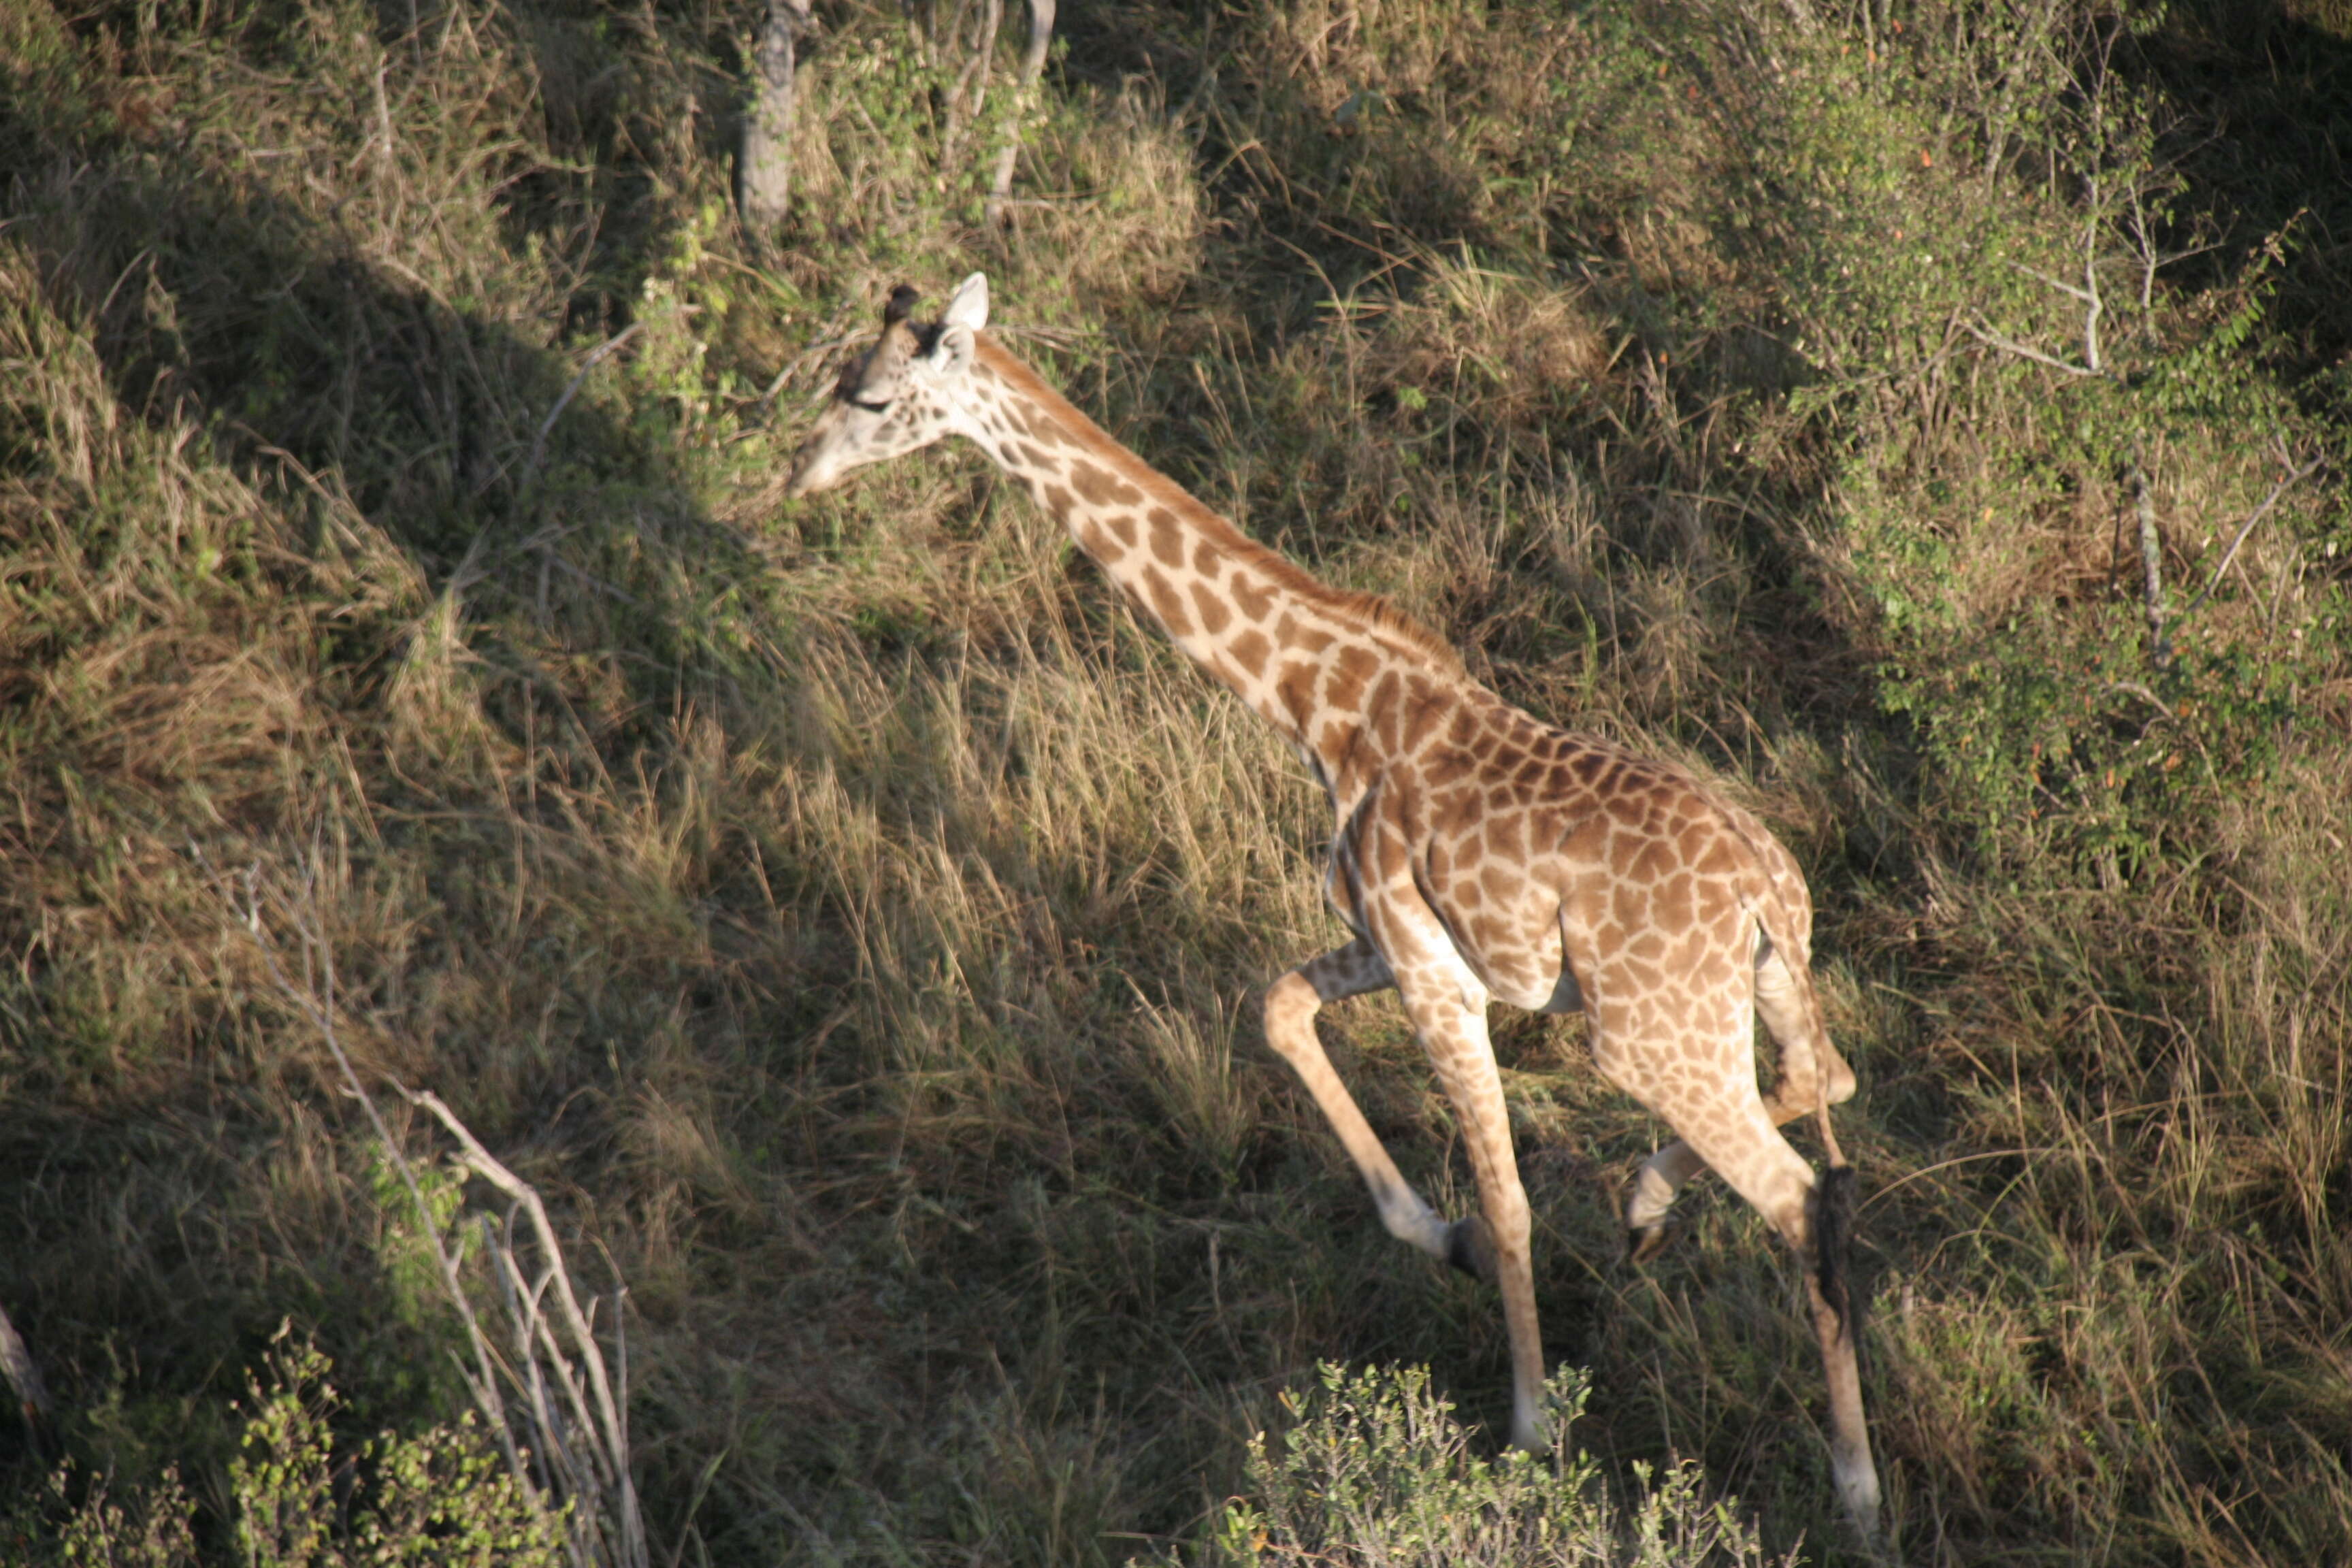 Imagem de girafa